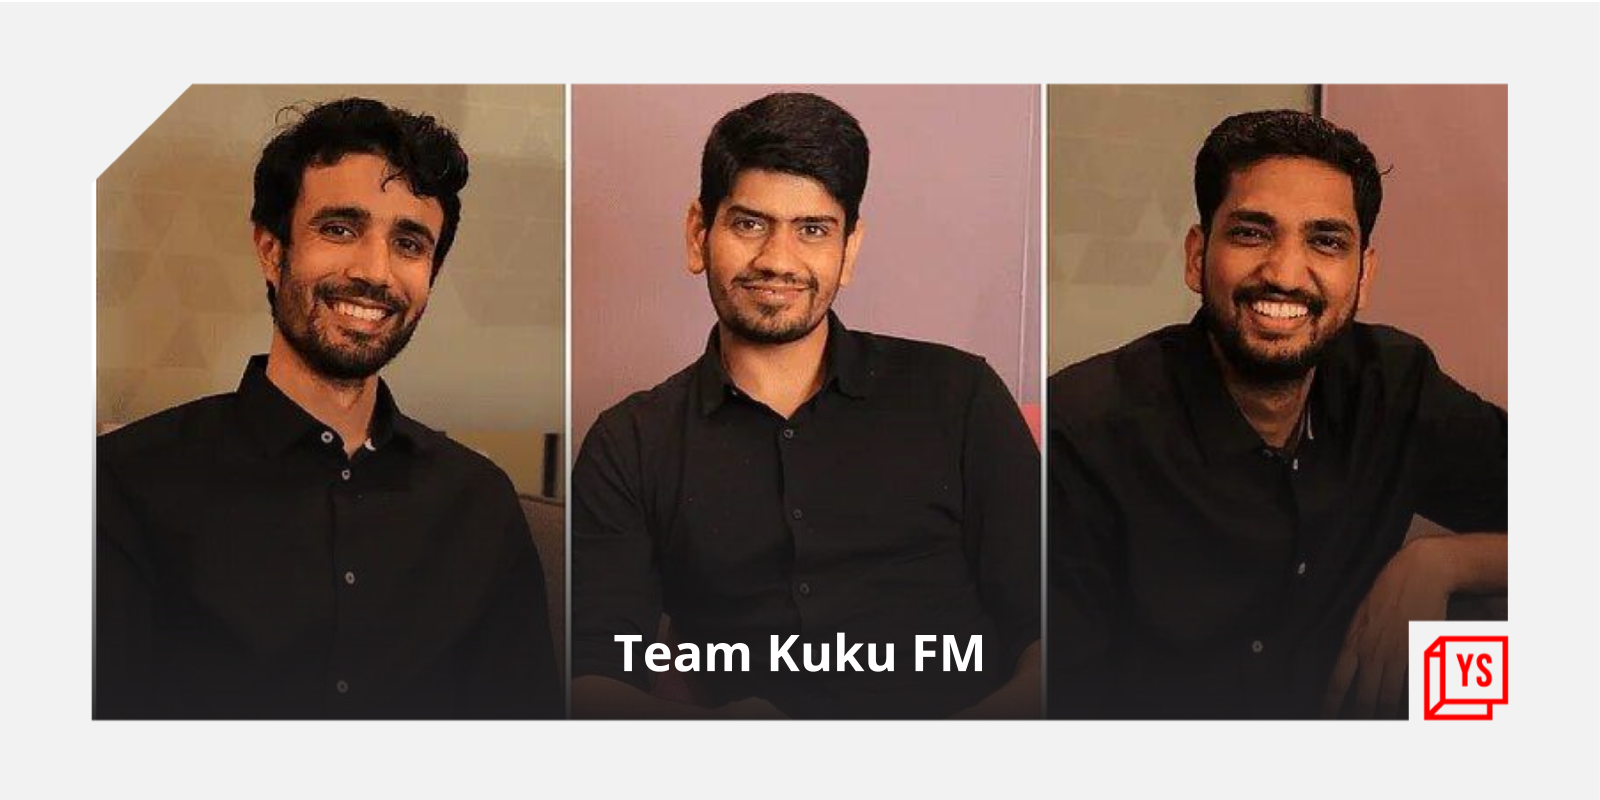 [Funding alert] Kuku FM raises $19.5M in Series B round led by KRAFTON